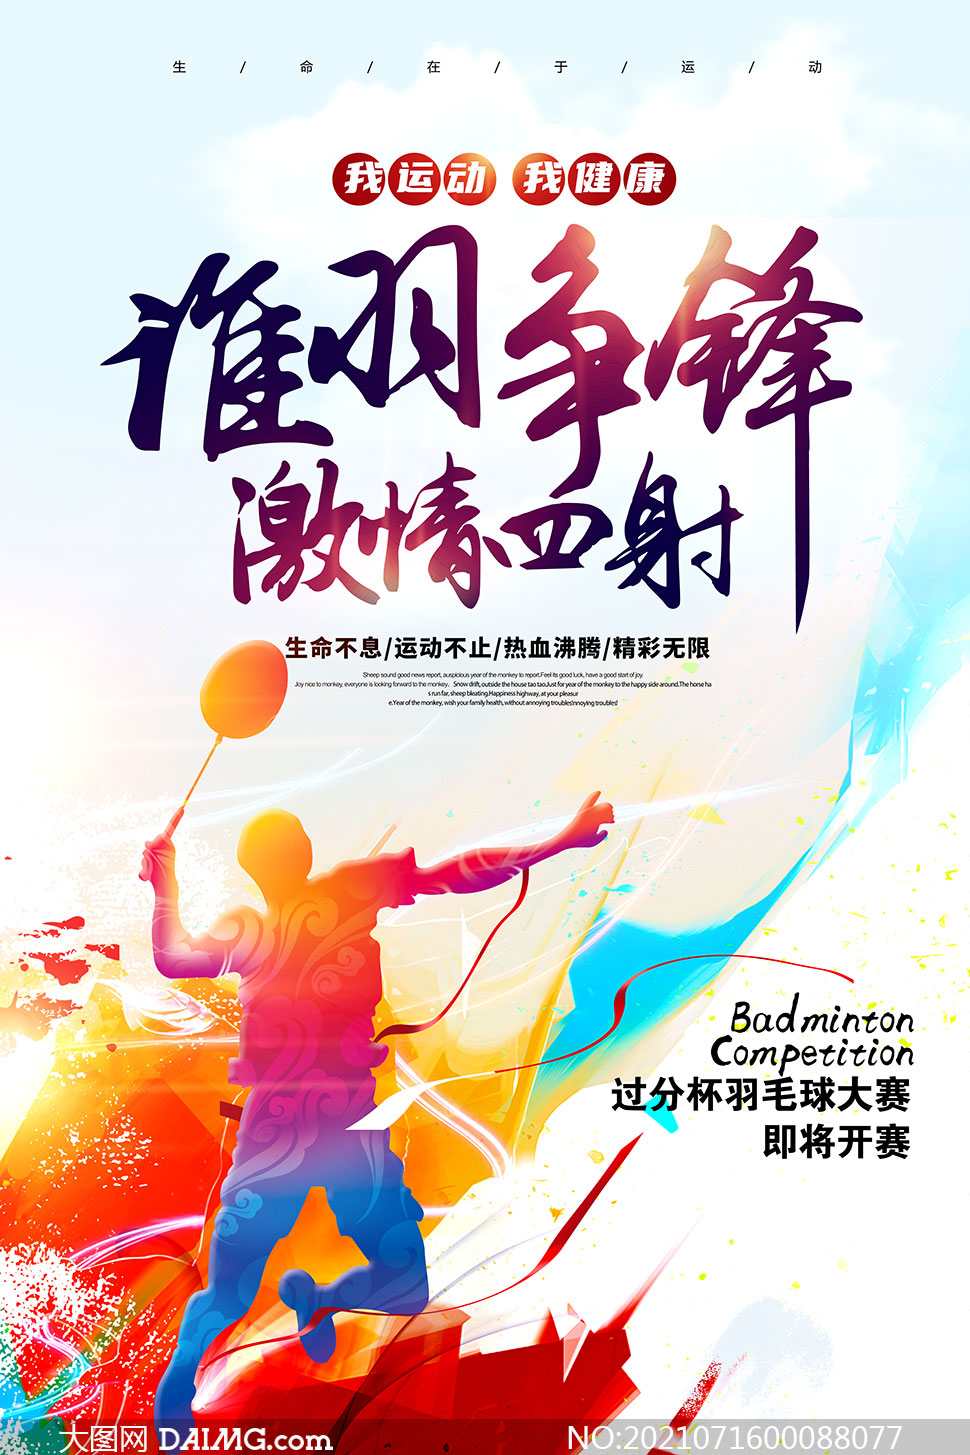 羽毛球大赛宣传海报设计psd素材